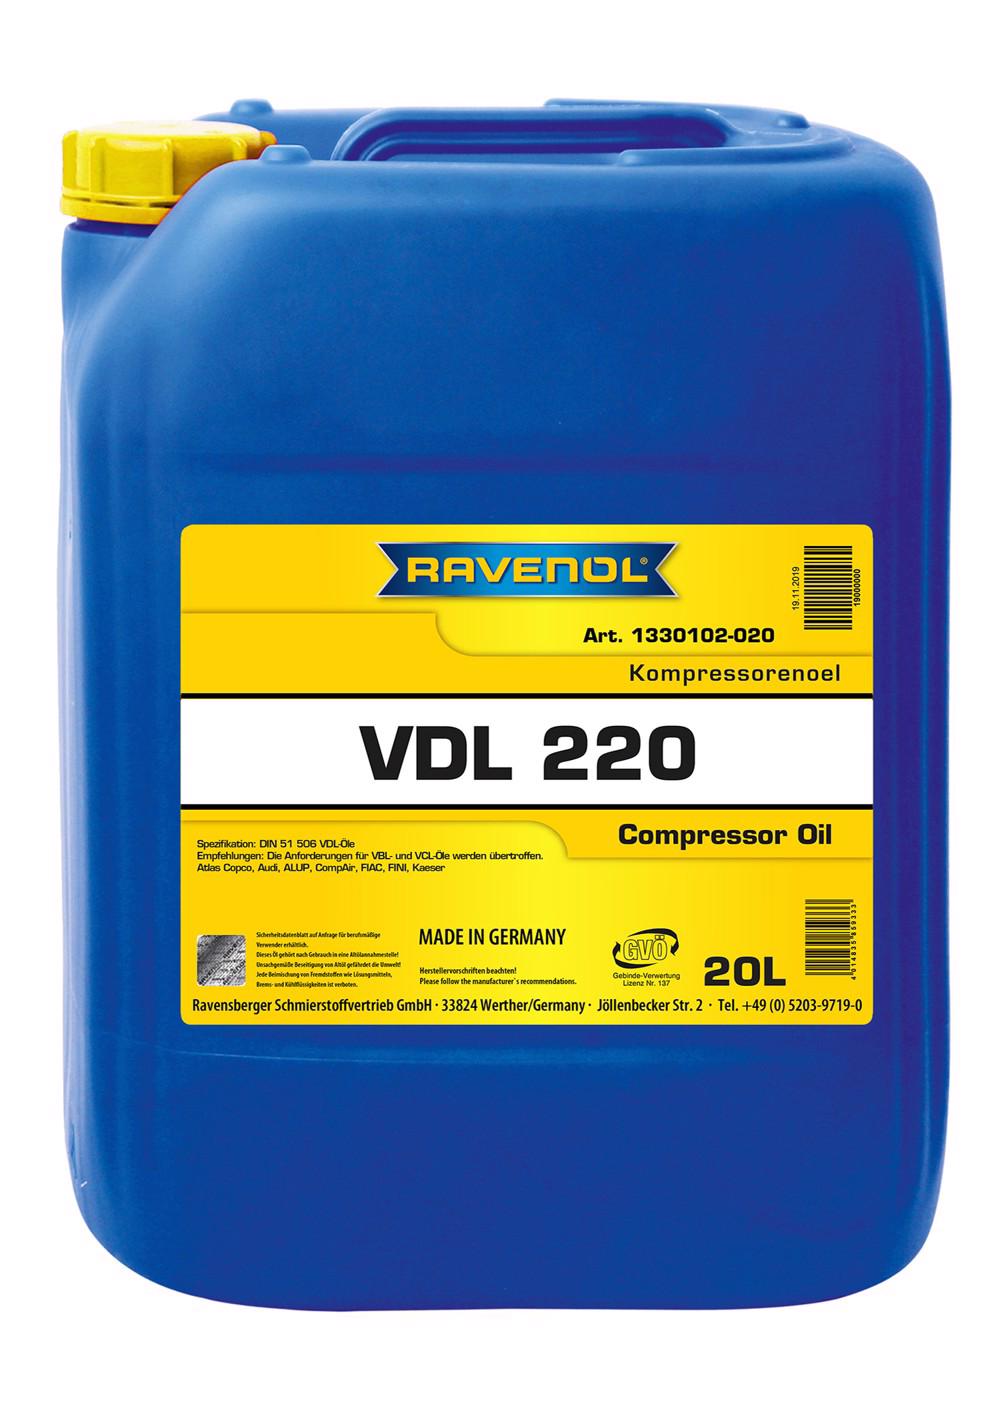 RAVENOL Kompressorenoel VDL 220  20 L